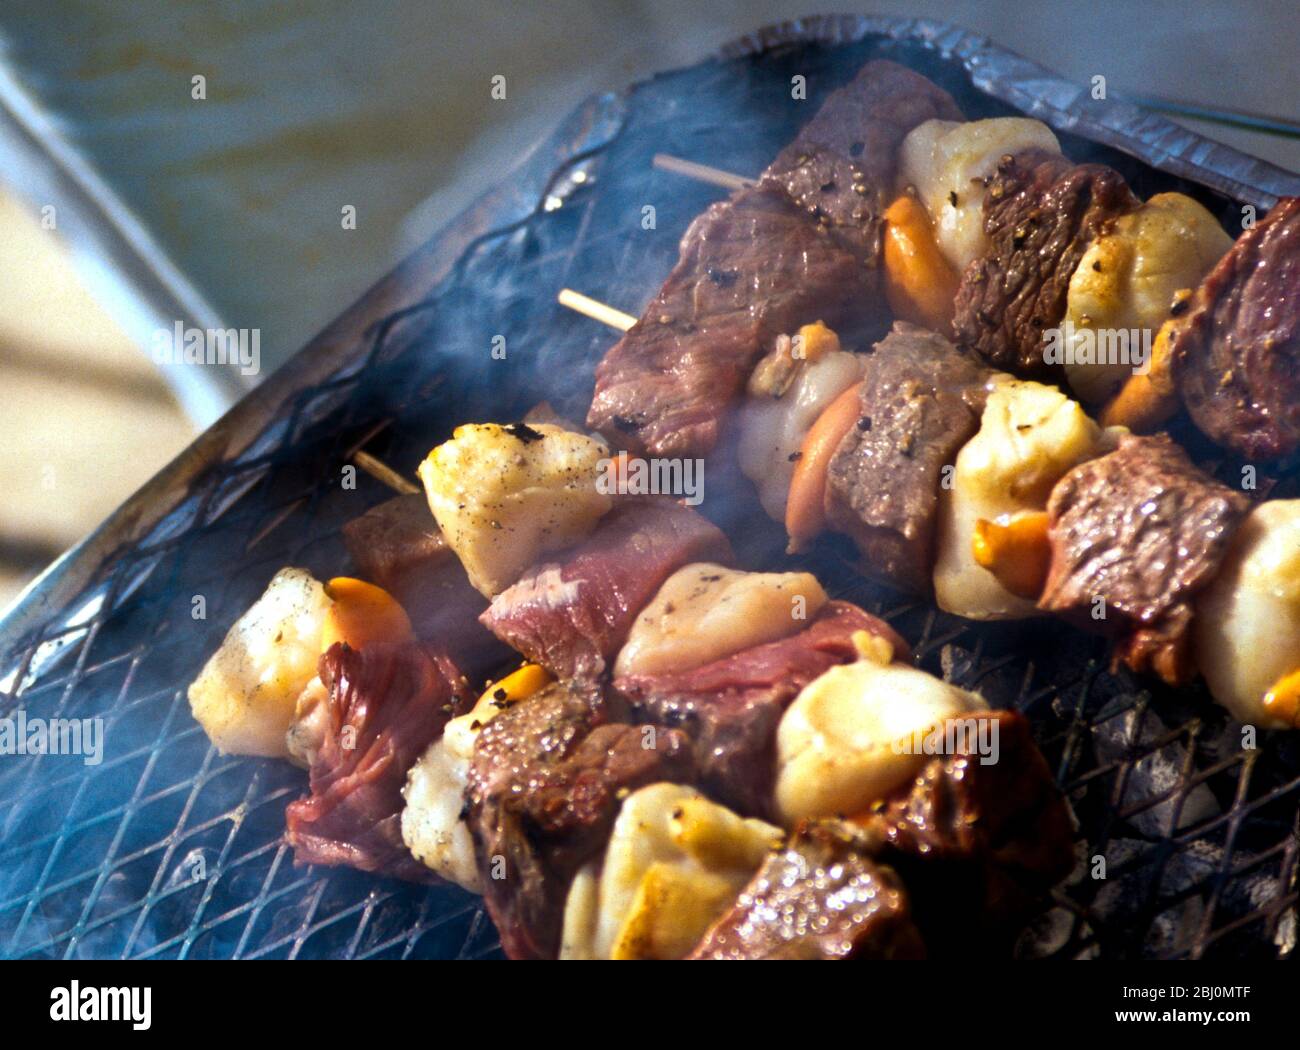 Grillen von Jakobsmuscheln und Steak-Kebabs auf einem Holzkohlegrill - Stockfoto